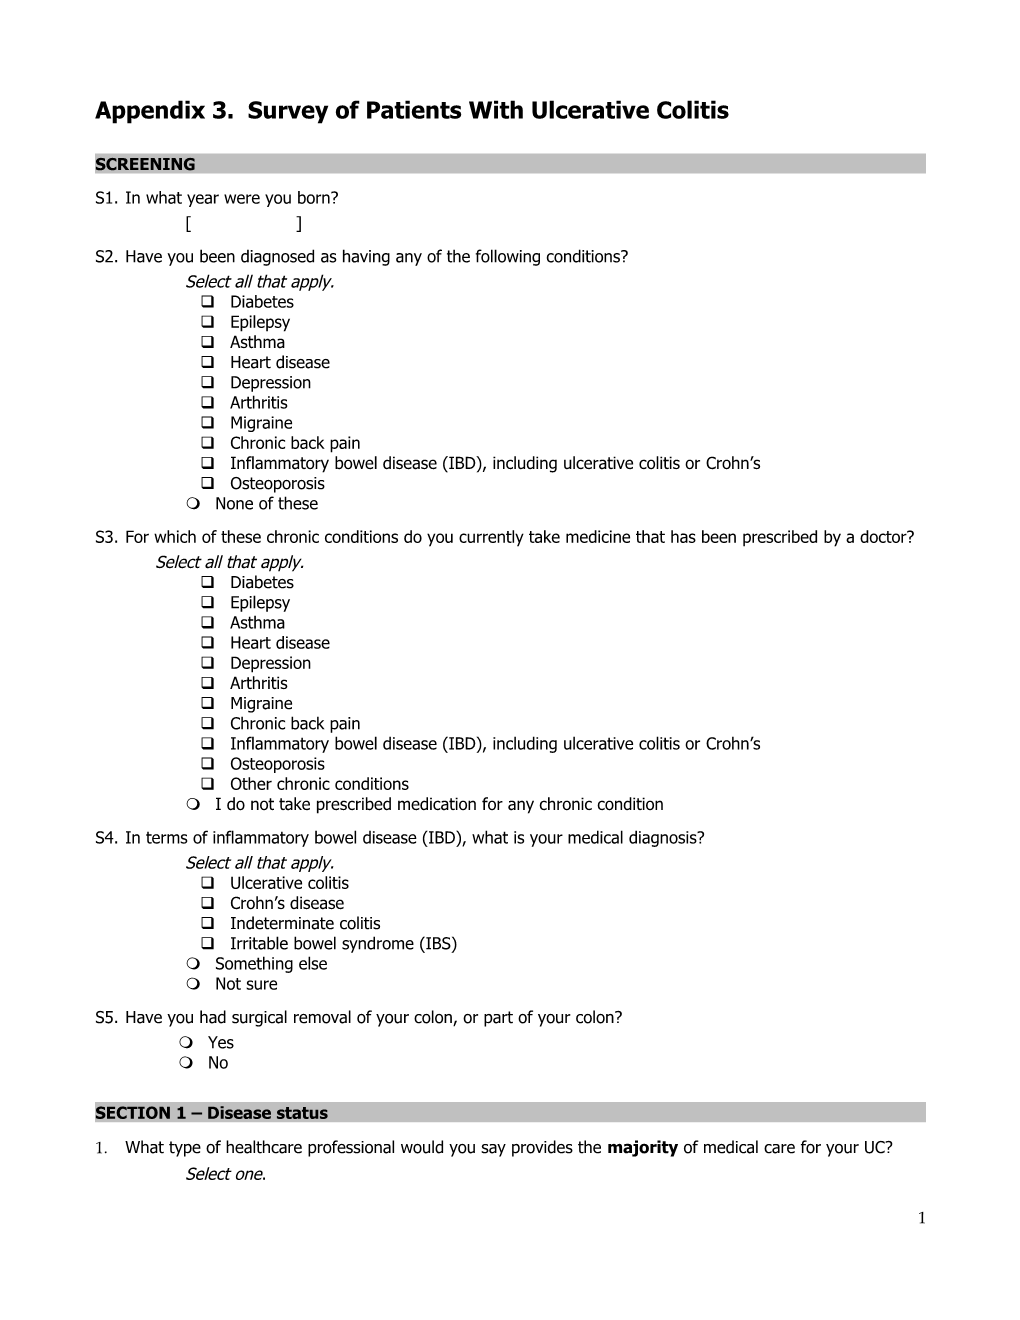 Appendix 3. Survey of Patients with Ulcerative Colitis